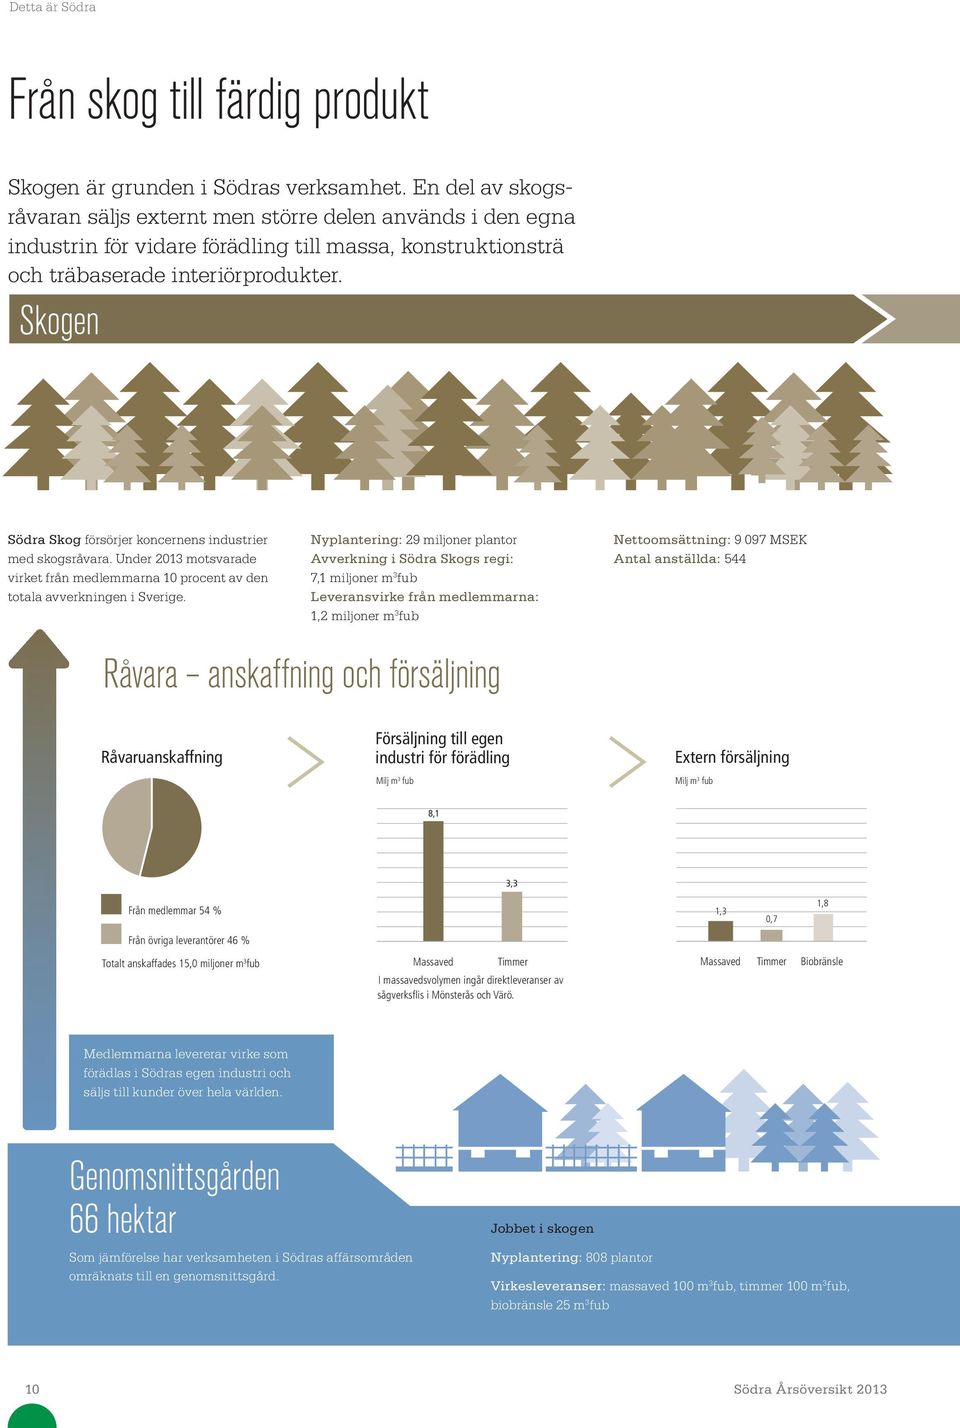 Skogen Södra Skog försörjer koncernens industrier med skogsråvara. Under 213 motsvarade virket från medlemmarna 1 procent av den totala avverkningen i Sverige.